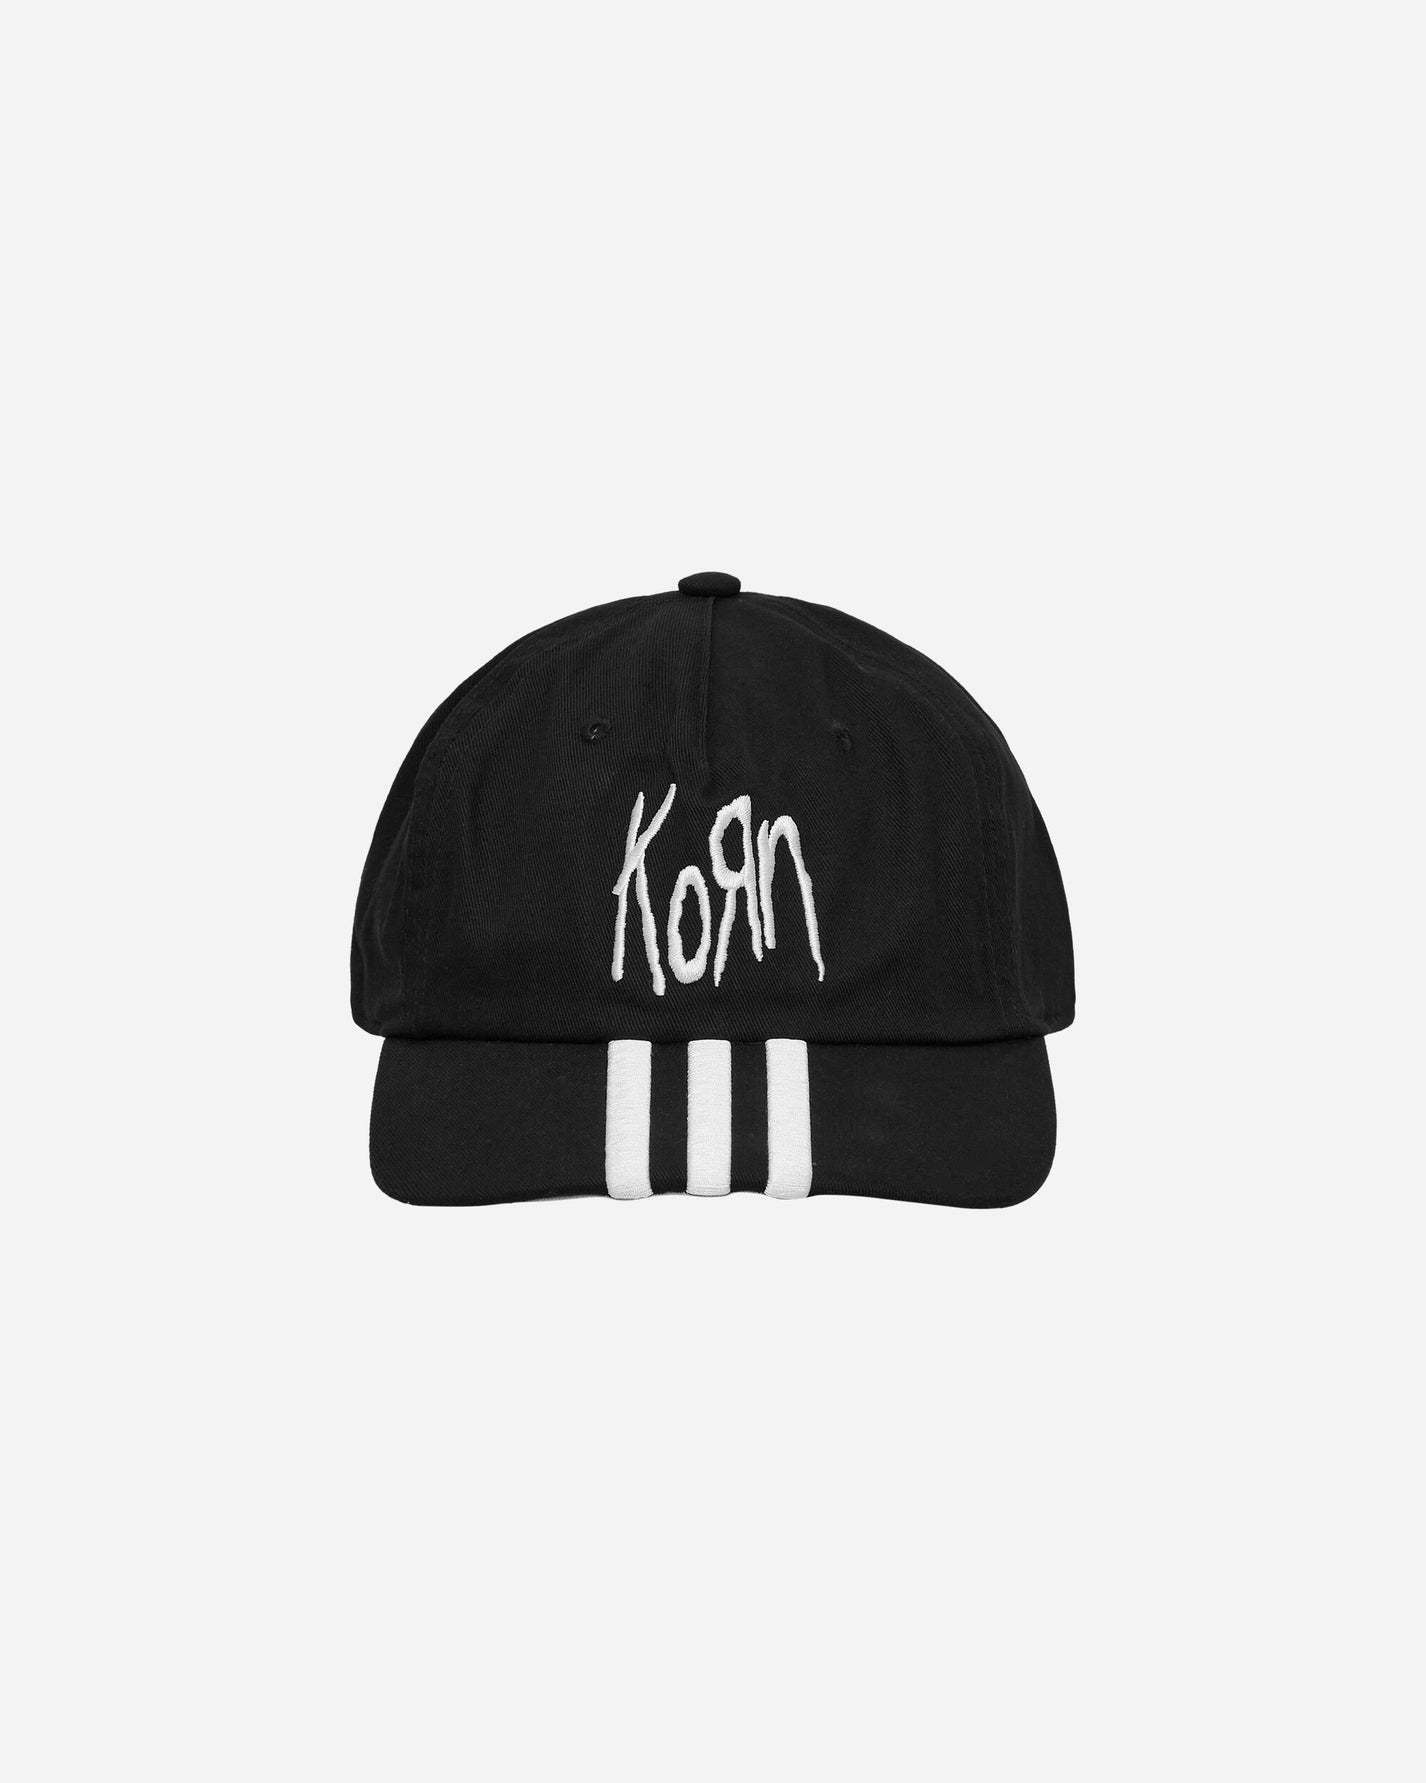 adidas Korn Cap Black Hats Caps JF3139